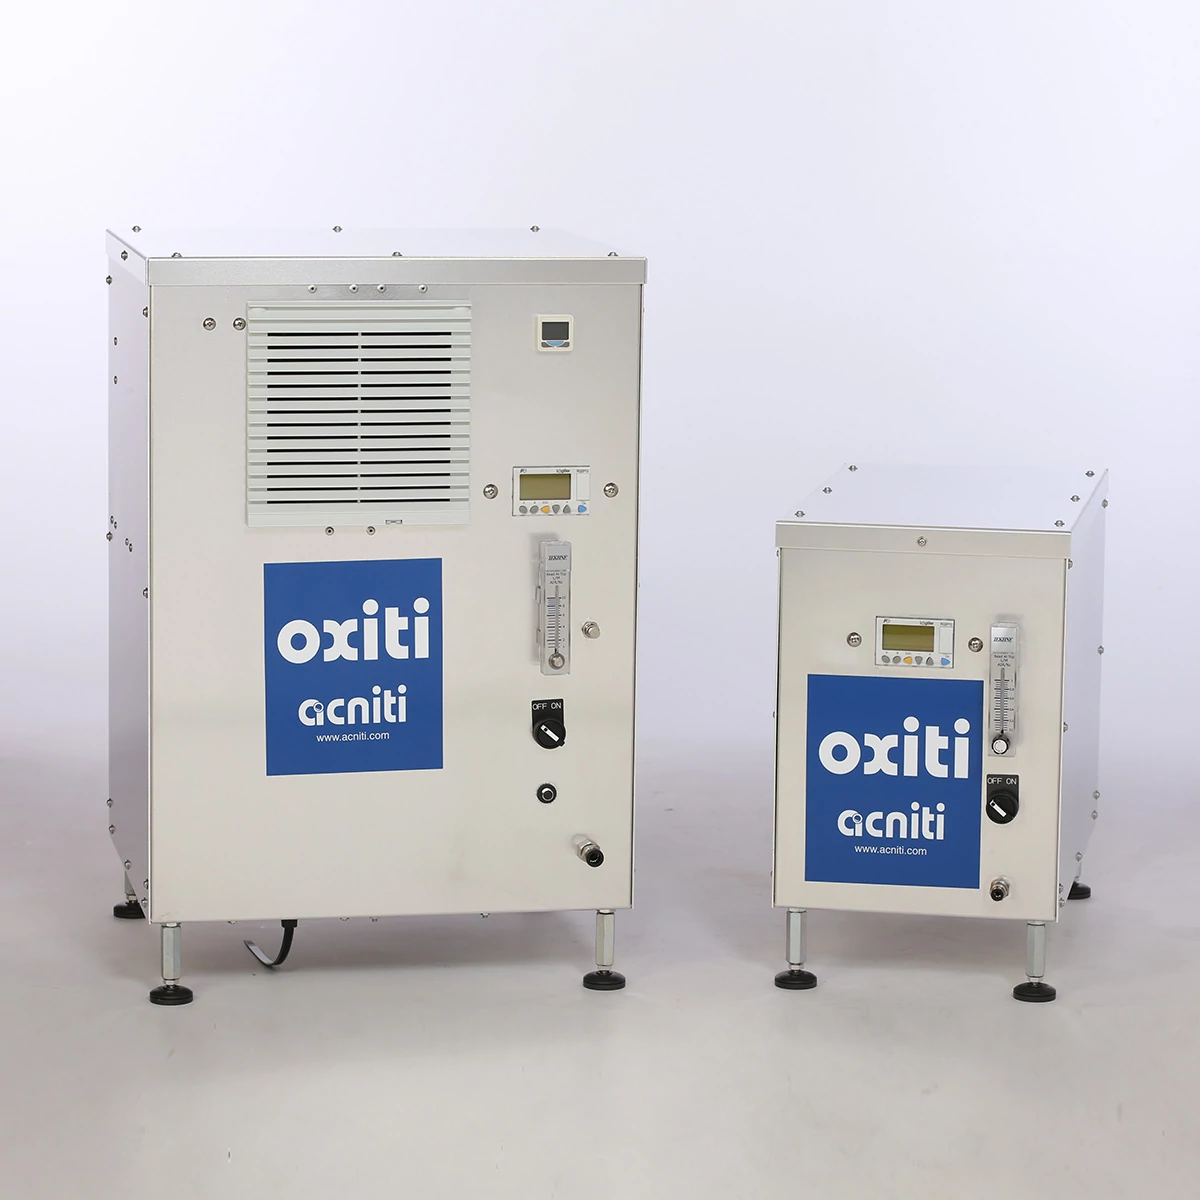 oxiti酸素濃縮器